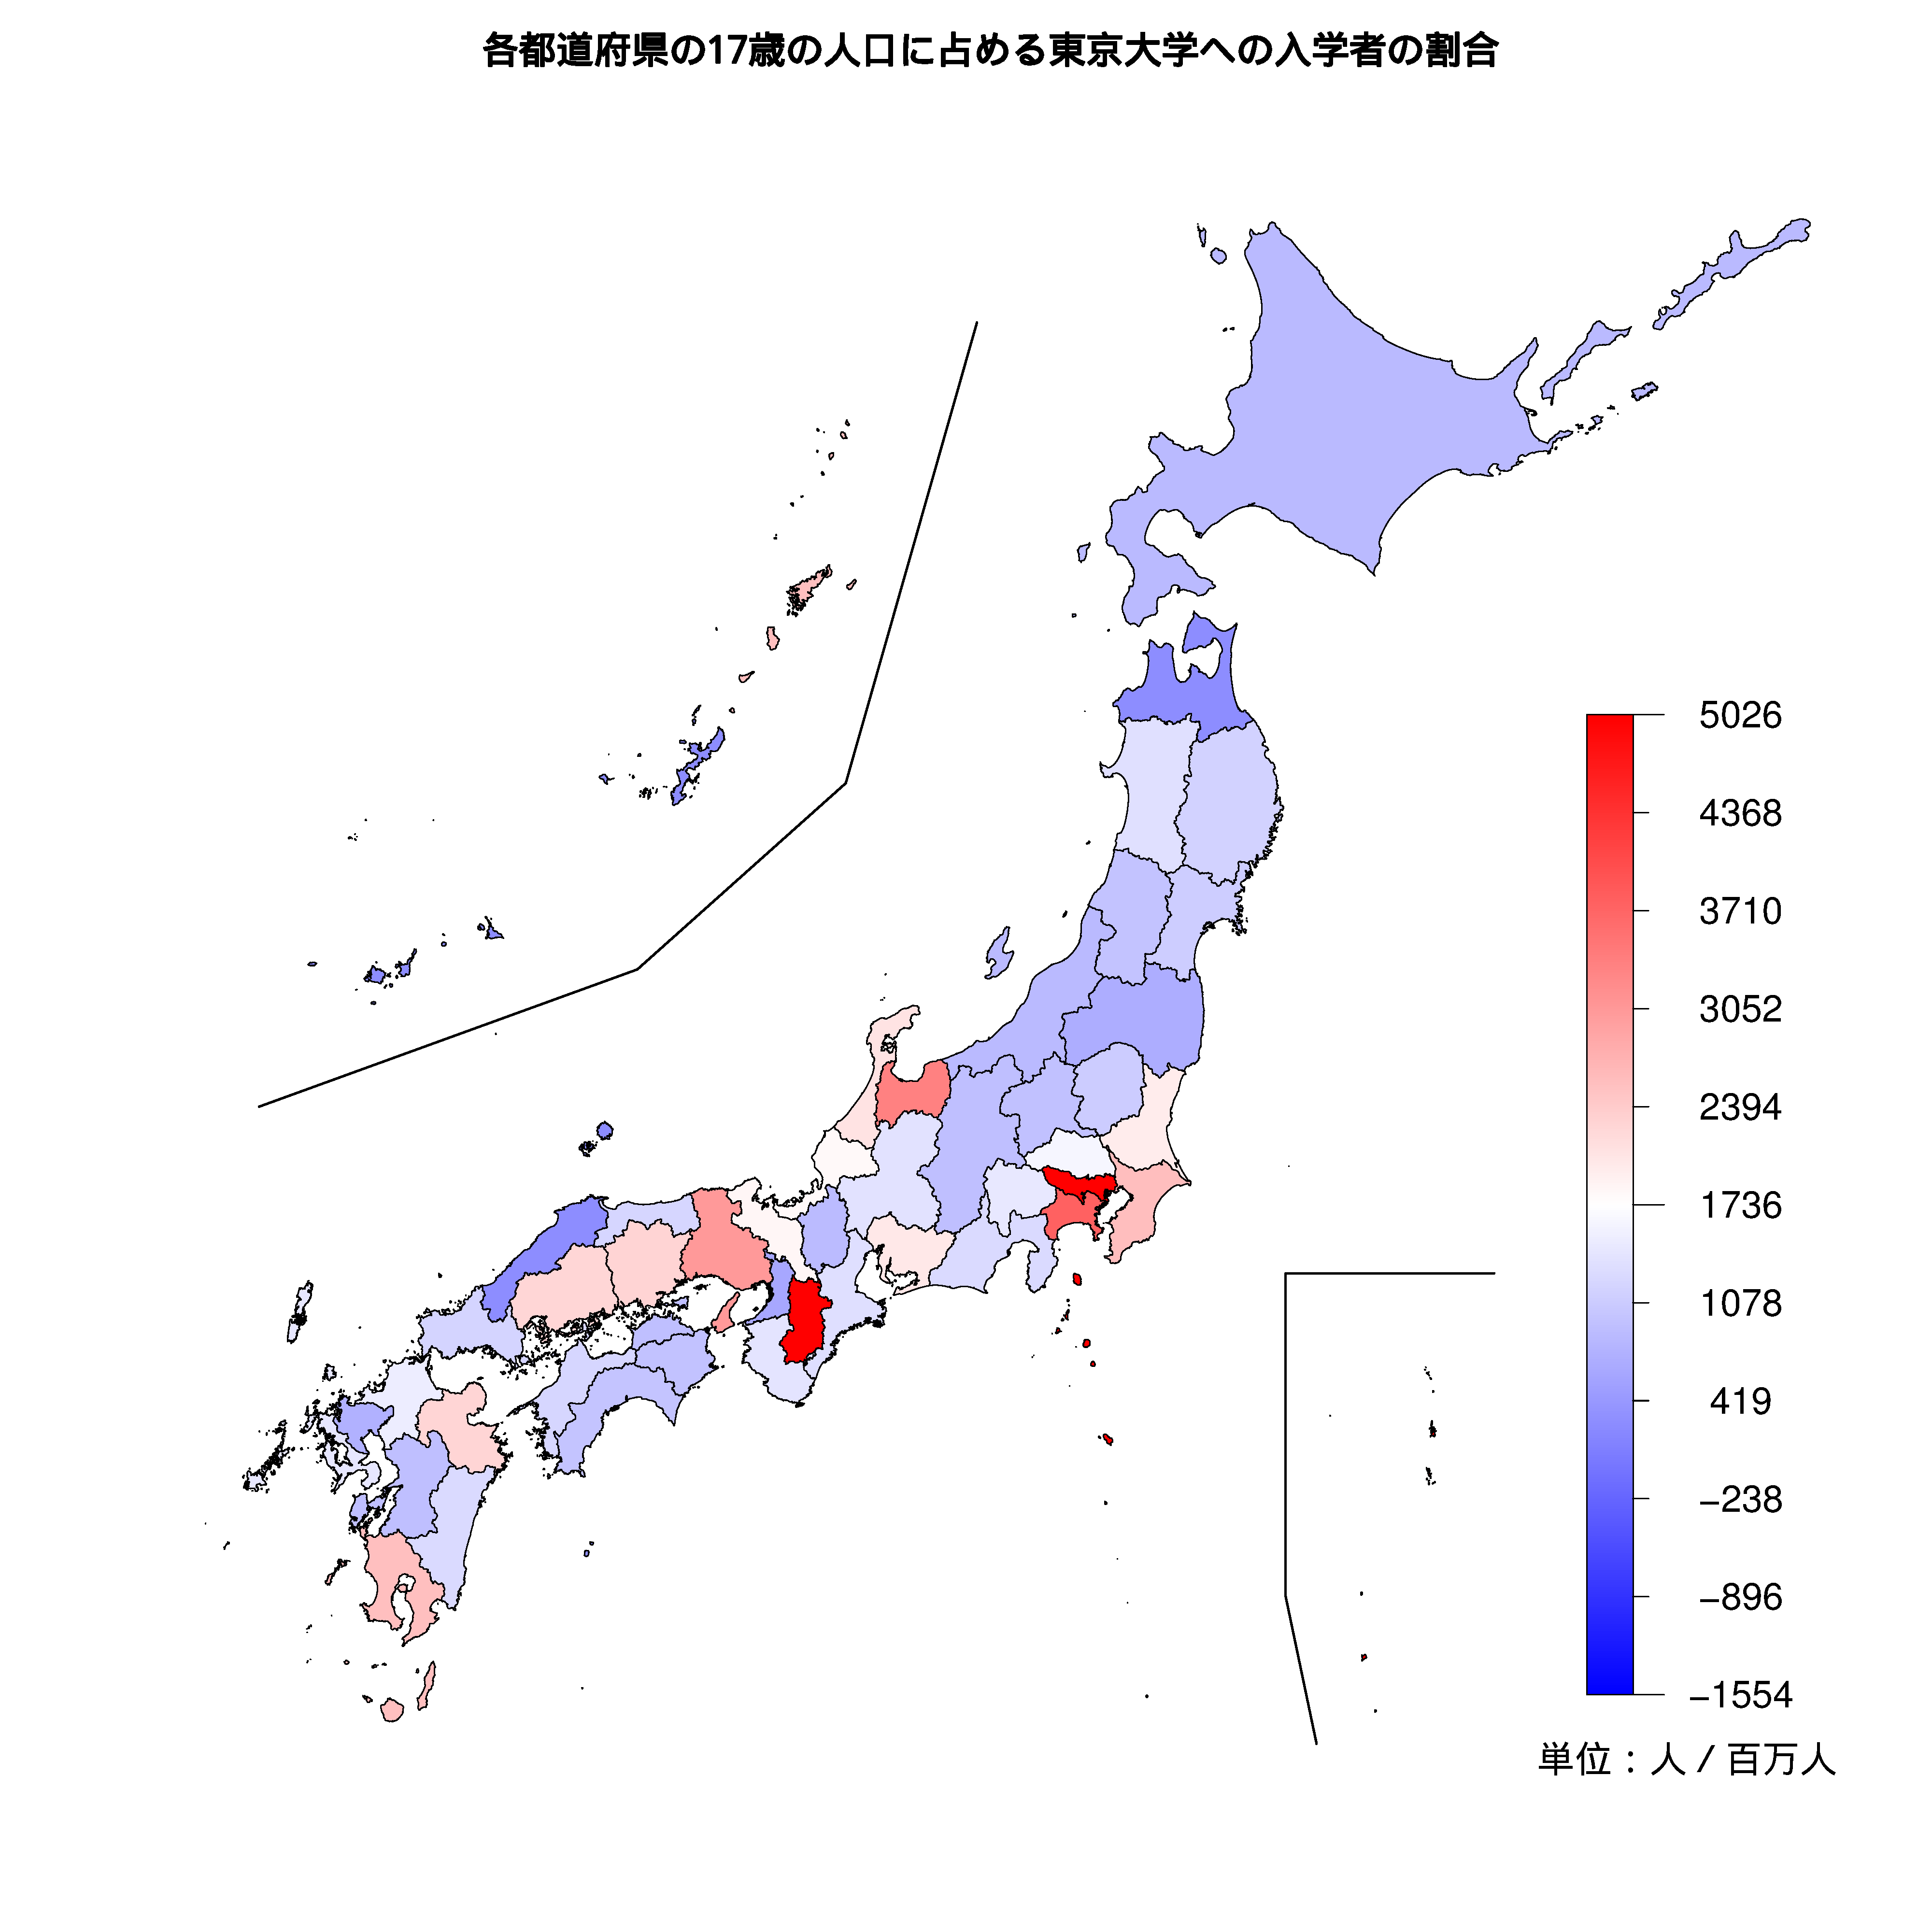 東京大学への入学者が多い都道府県の色分け地図